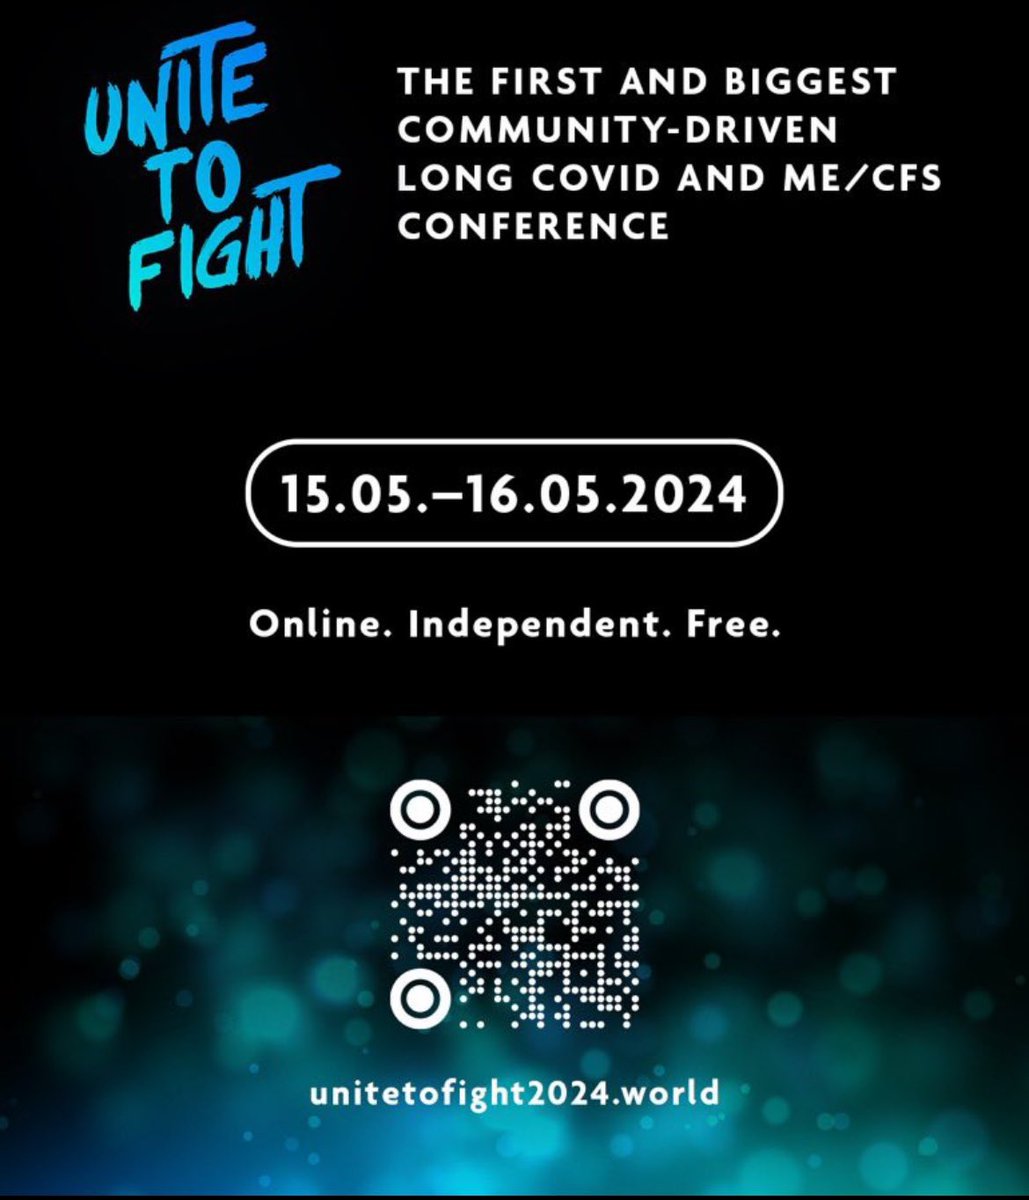 Für alle die noch Bock haben unsere coolen Flyer für die #UnitetoFight2024 Konferenz an Ärzte, Unis, Fachgesellschaften, Selbsthilfegruppe, Betroffene, Angehörige, Versicherer, Journalisten usw. zu verteilen, hier könnt ihr euch einfach einen aussuchen! #LongCovid #MECFS